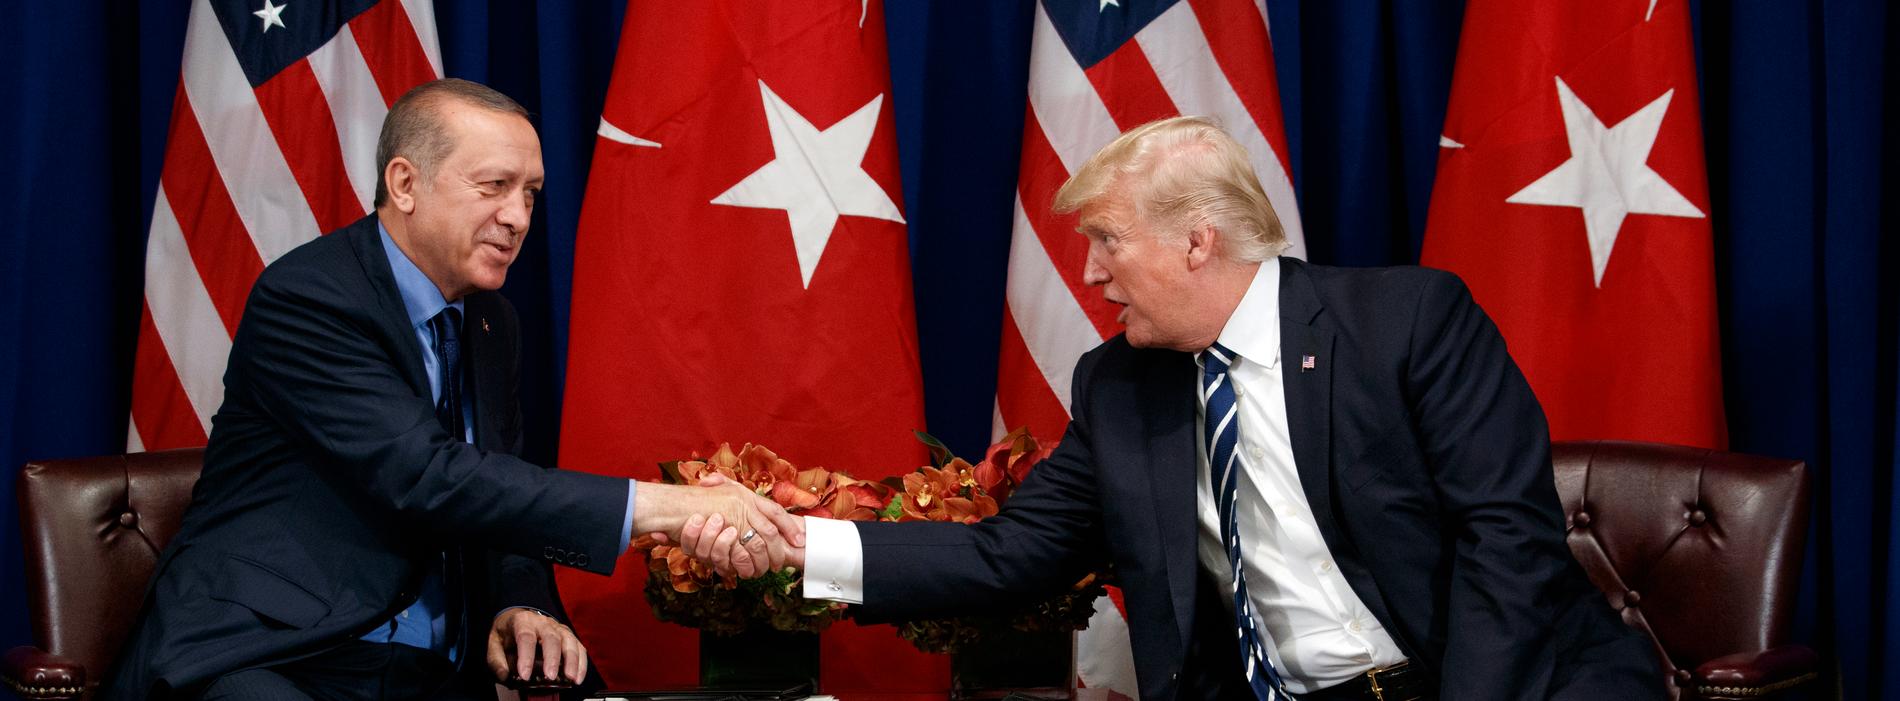 Turkiets Erdogan tycker sig ha fått grönt ljus av Donald Trump att invadera syriska Kurdistan.